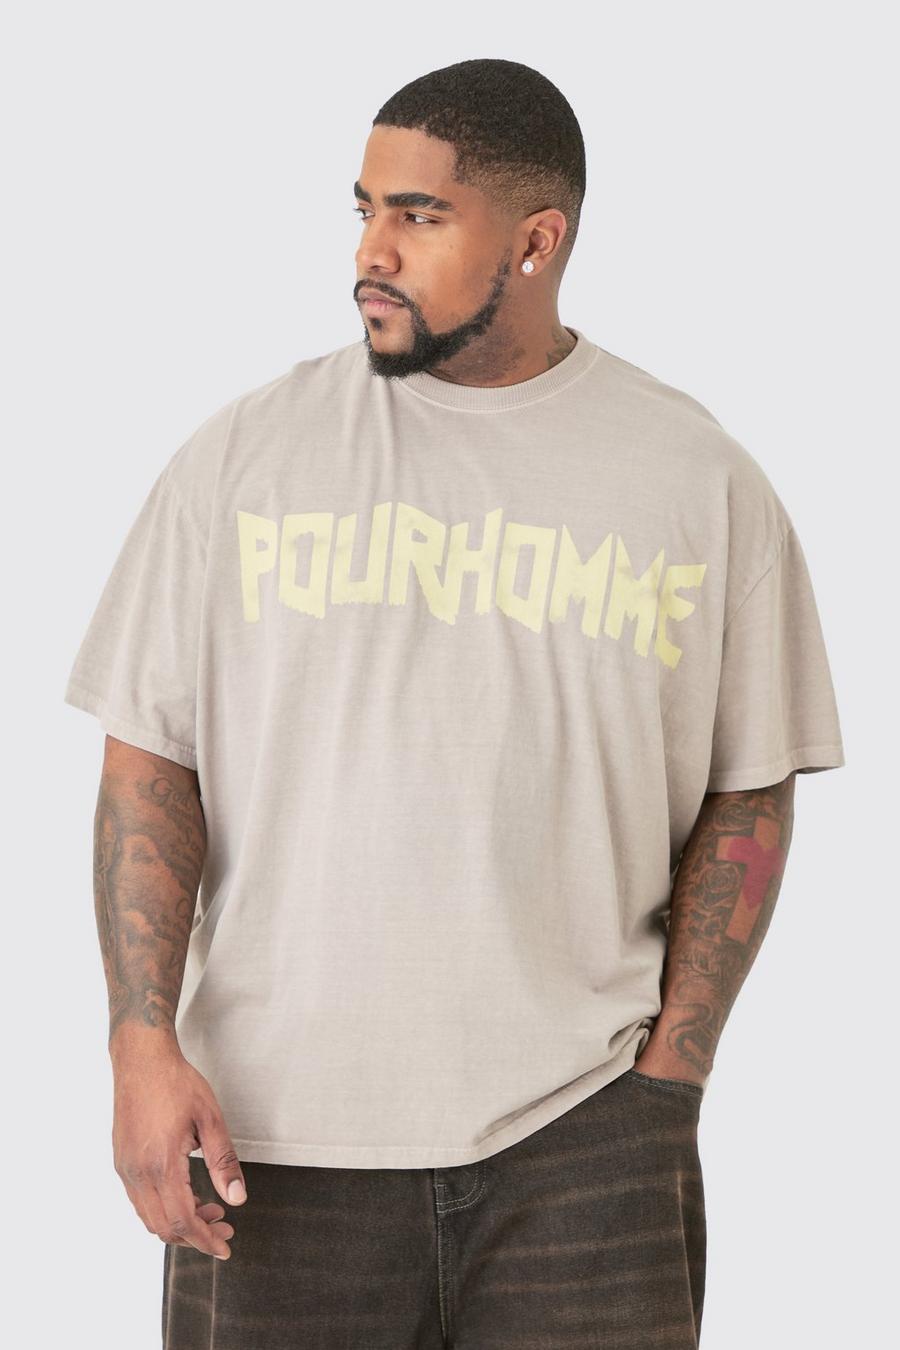 T-shirt Plus Size oversize slavata con stampa Pour Homme, Charcoal